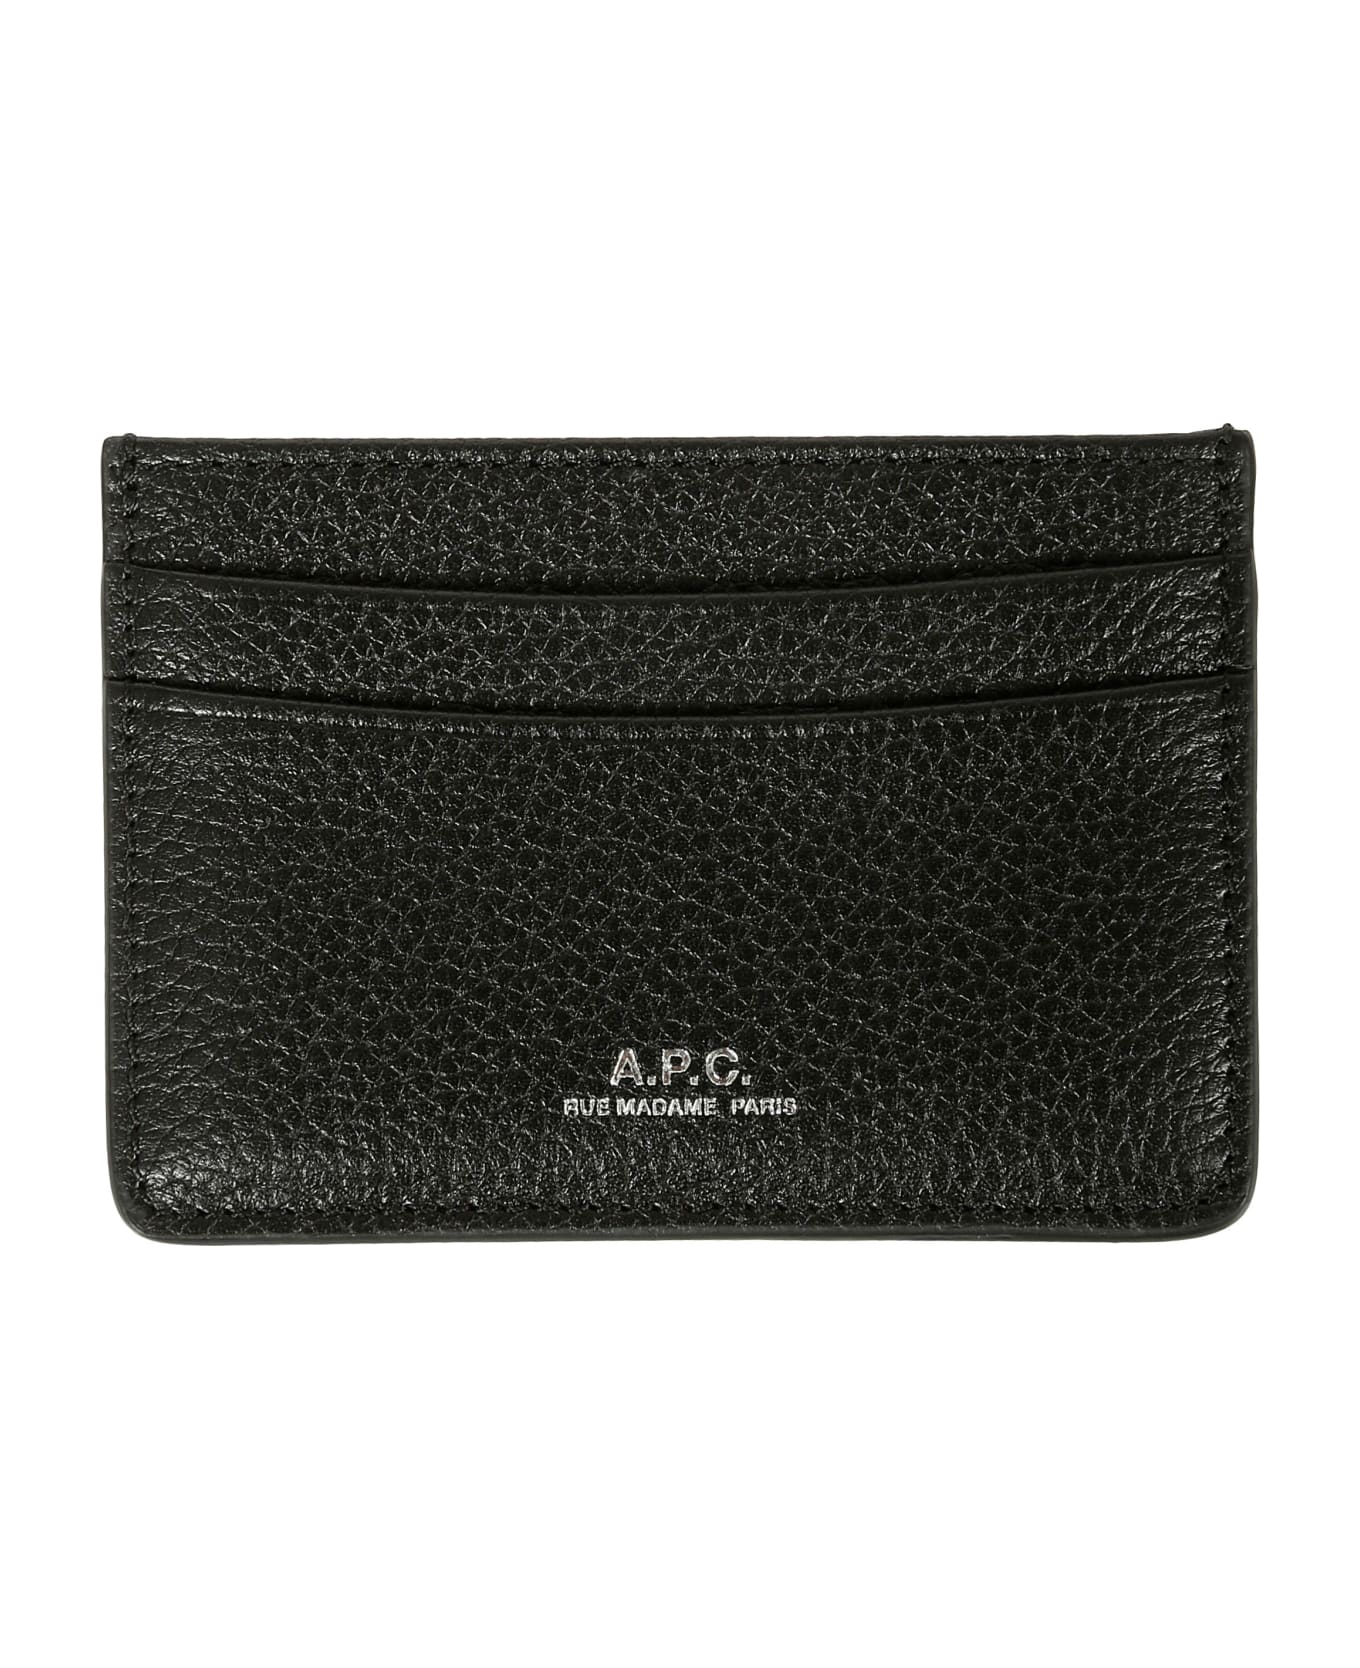 A.P.C. Porte-cartes Andre - Lzz Noir